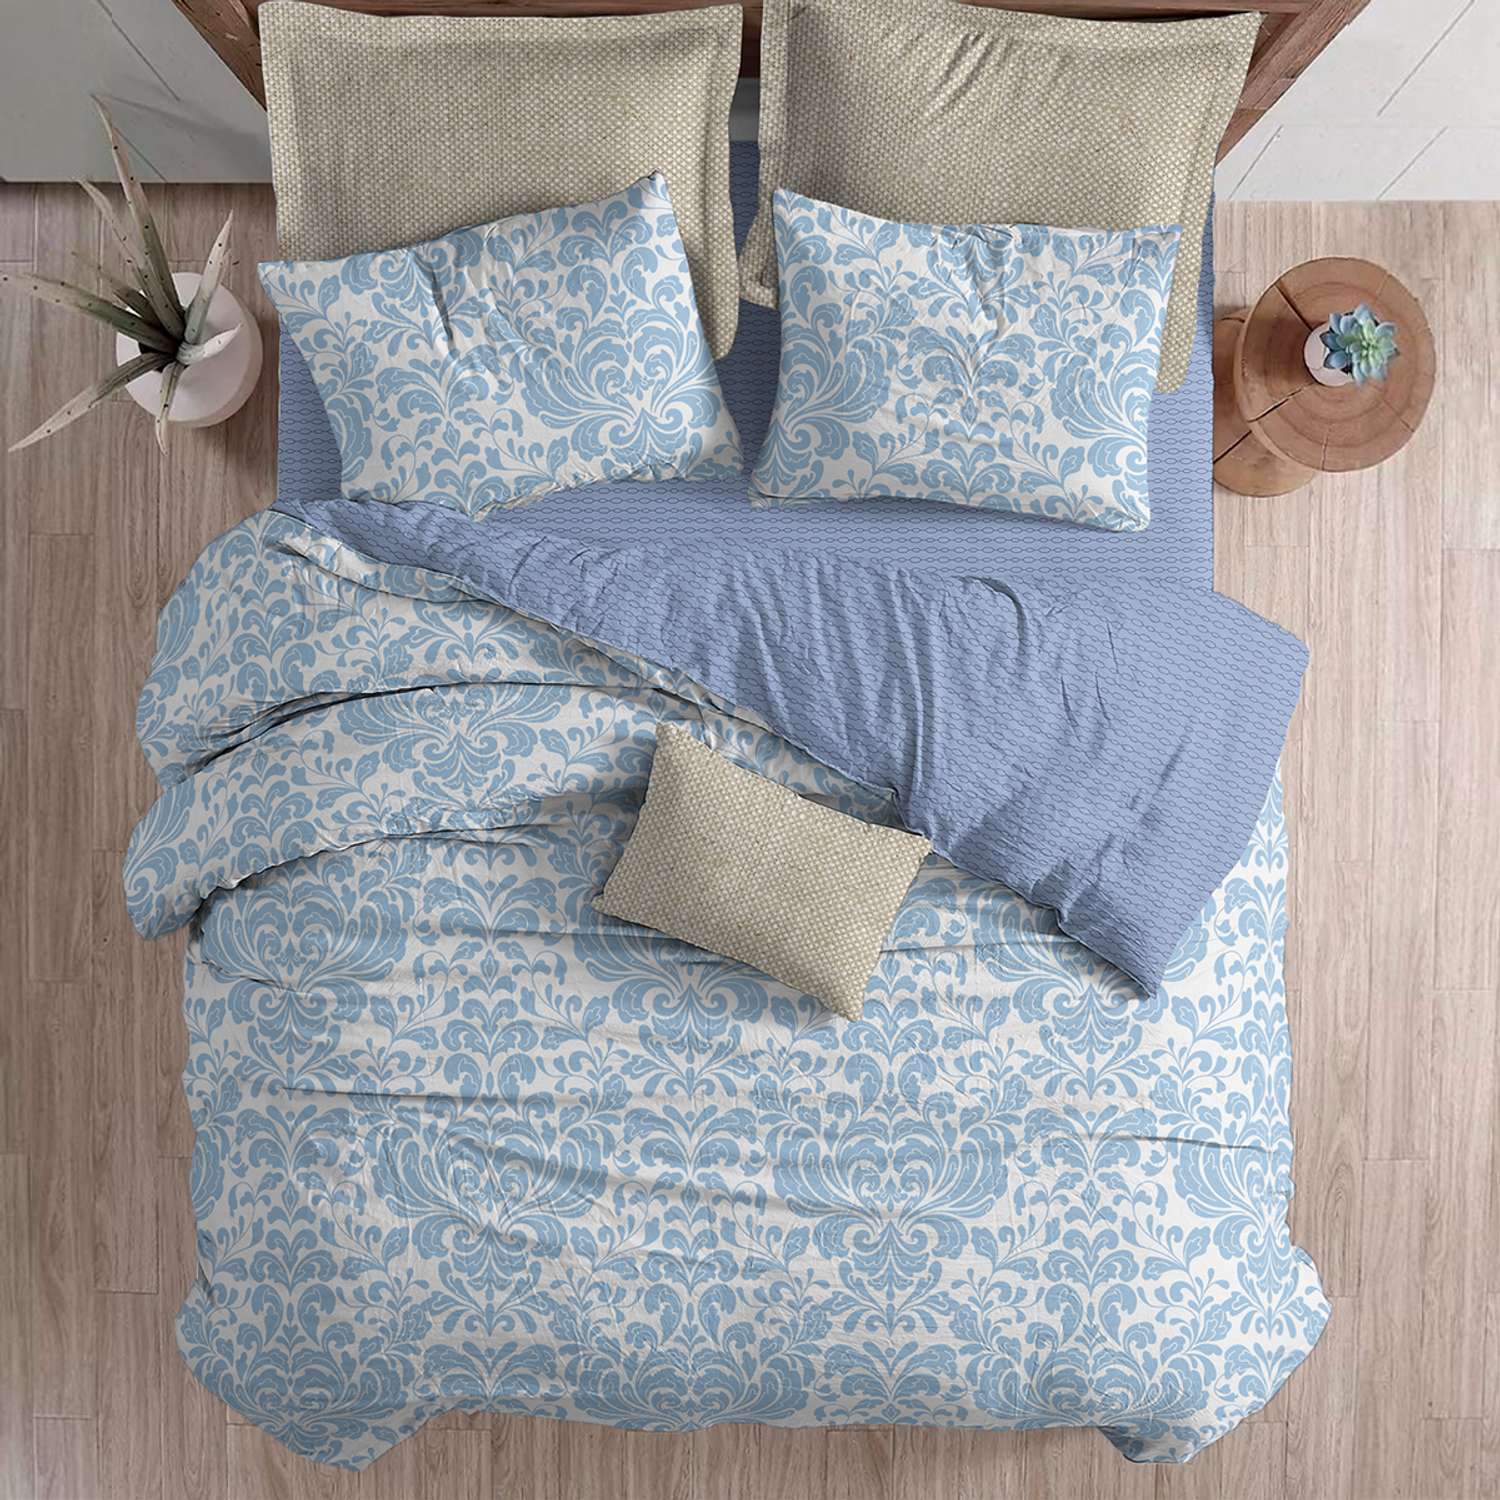 Комплект постельного белья lagom Сконе 1.5-спальный наволочки 70х70 - фото 8